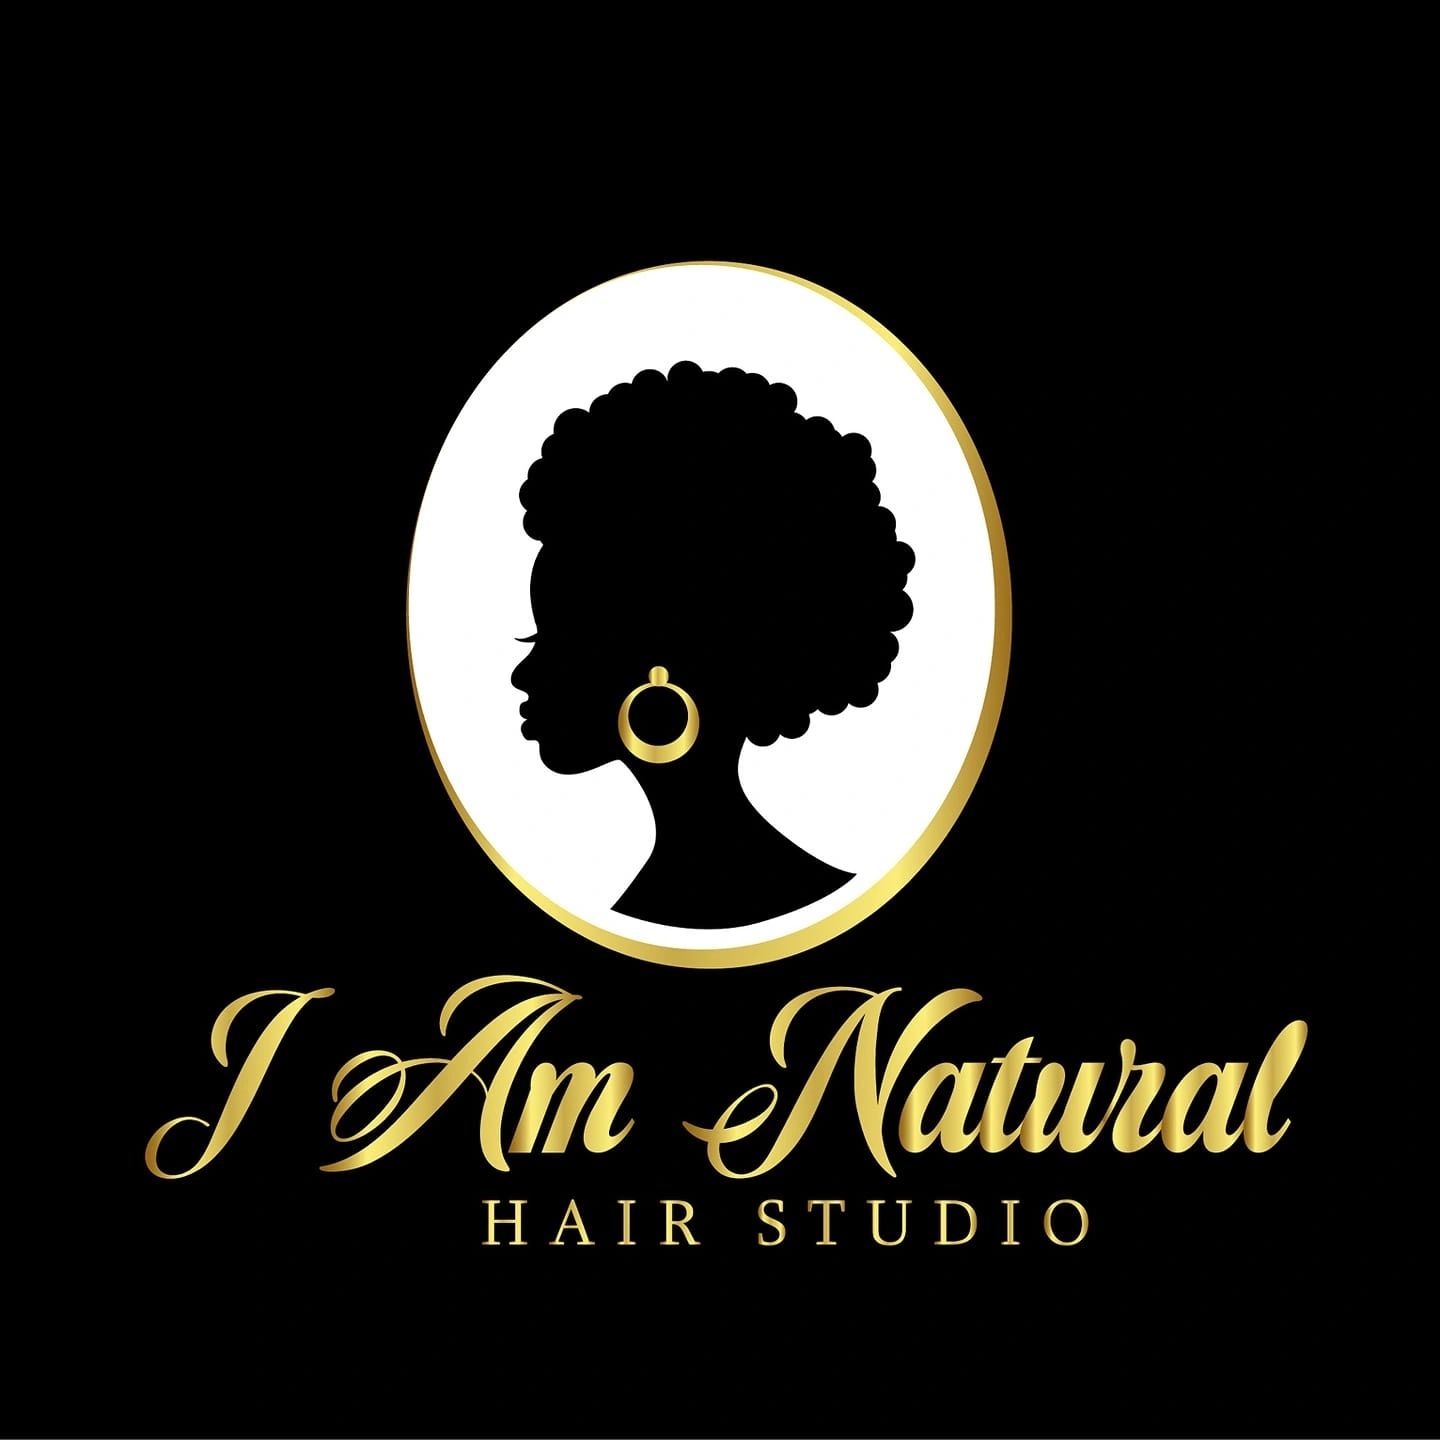 Natural Hair Salon - I am natural hair studio llc